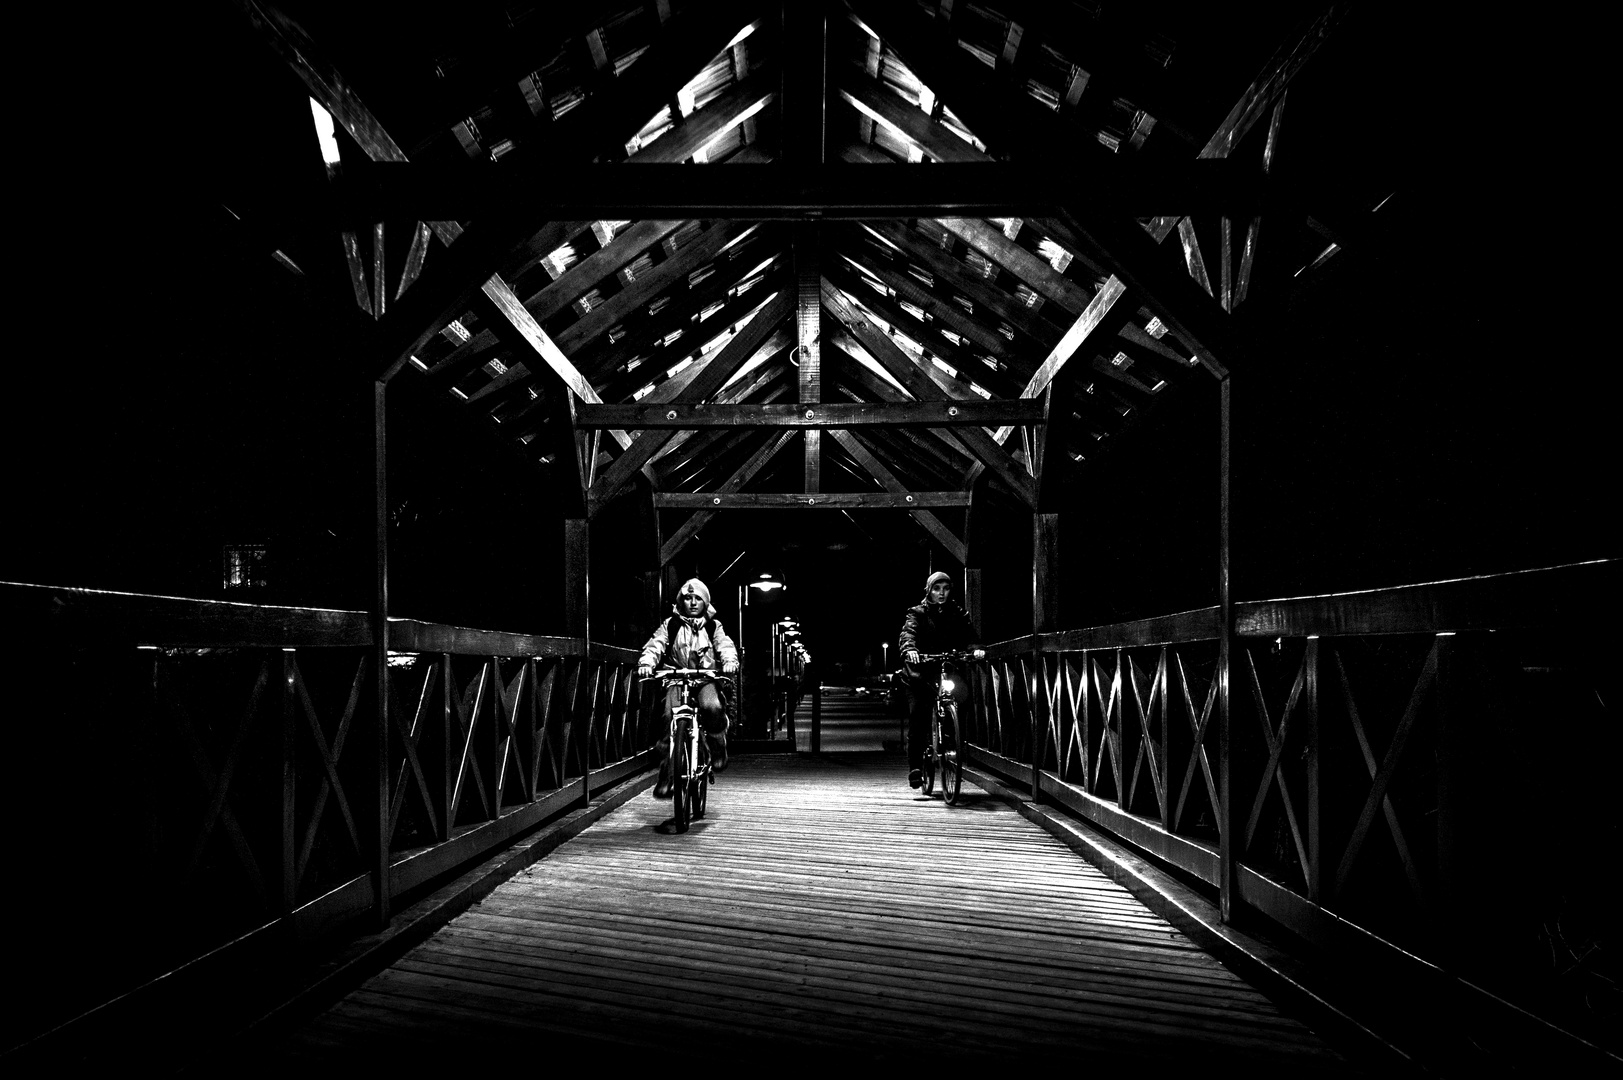 riders in the dark